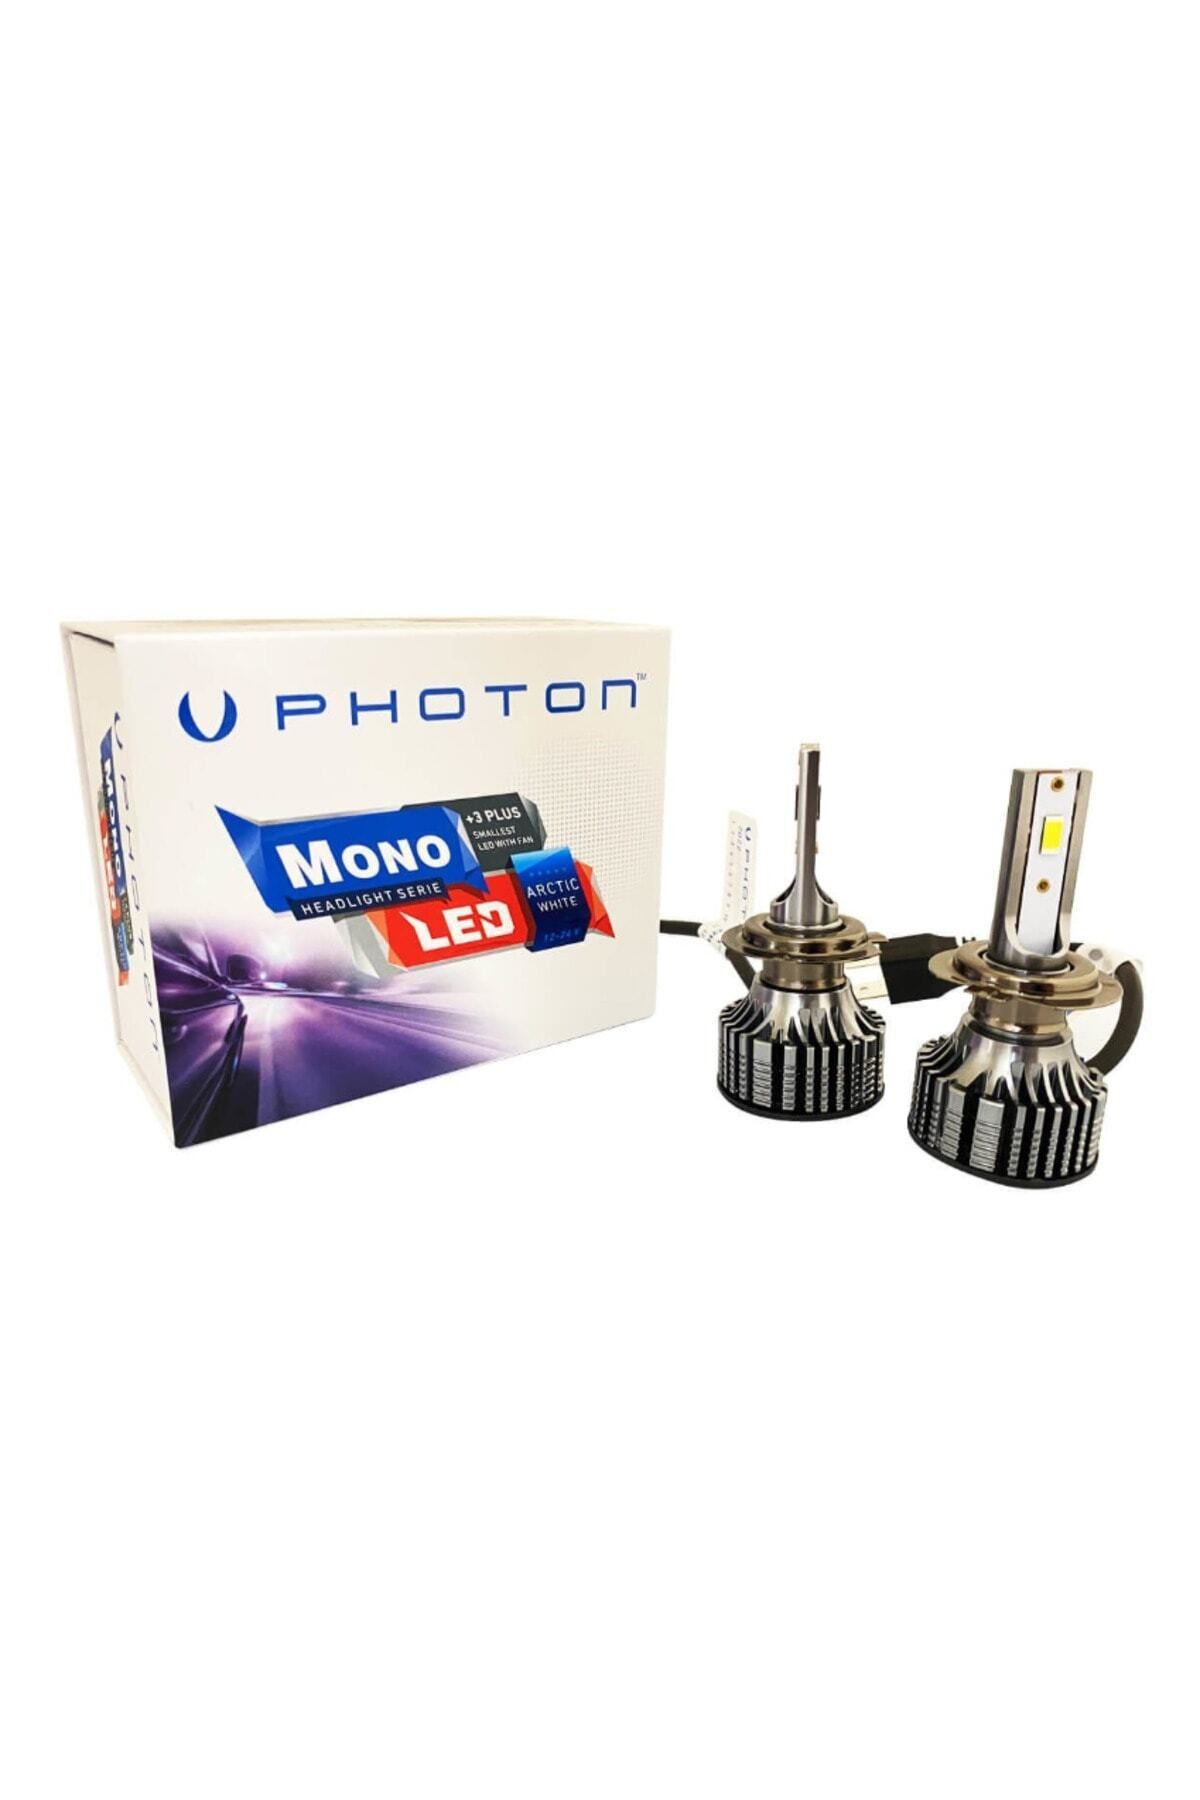 Photon Mono Serisi 3 Plus Led Xenon H7